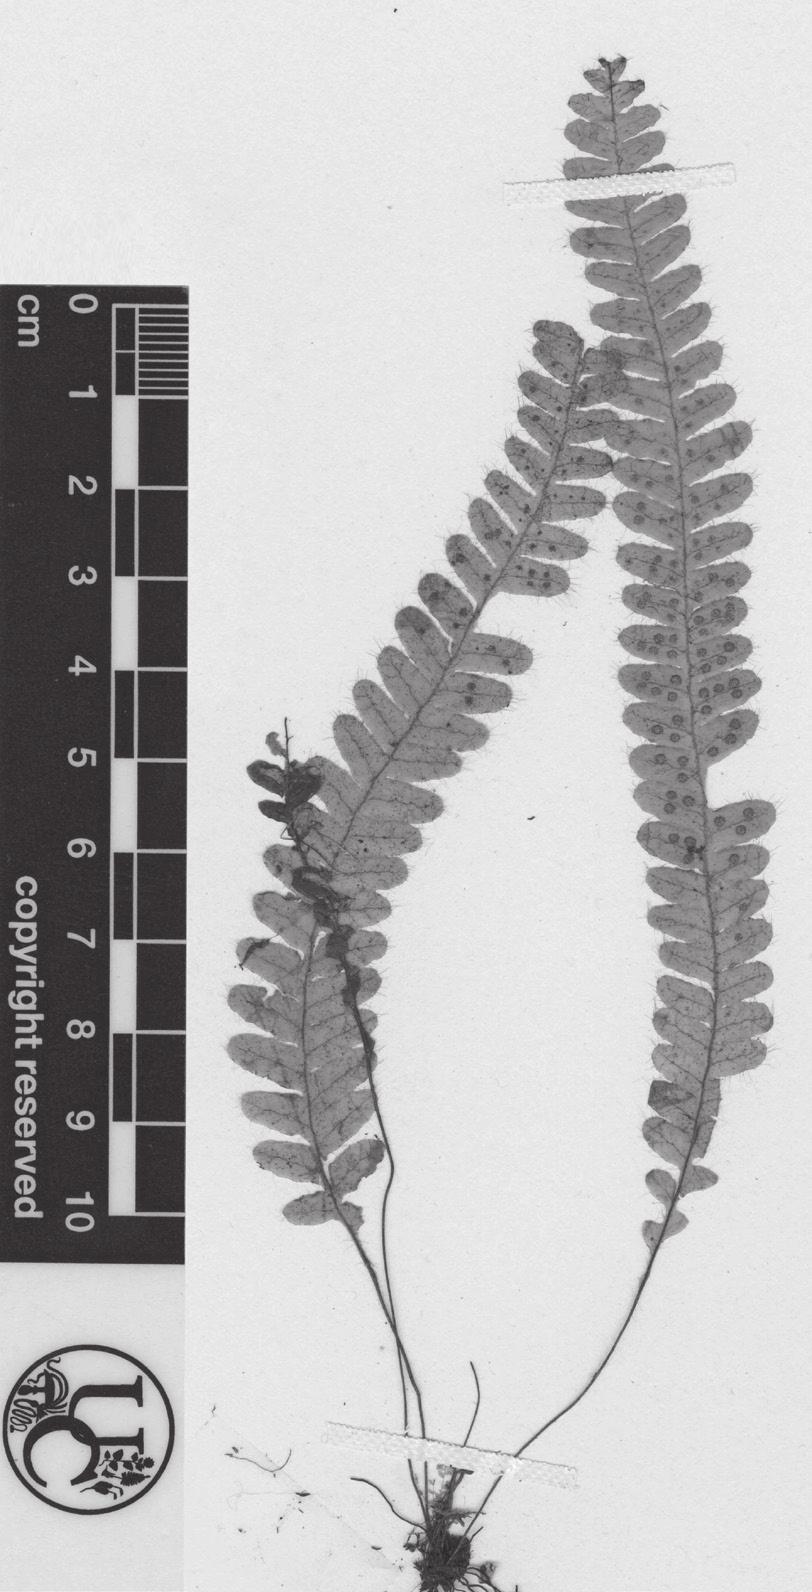 León-P.: Ceradenia (Polypodiaceae) 21 1. Ceradenia asthenophylla L.E. Bishop ex A.R. Sm., Novon 3 (2): 182. 1993. Tipo: Colombia.